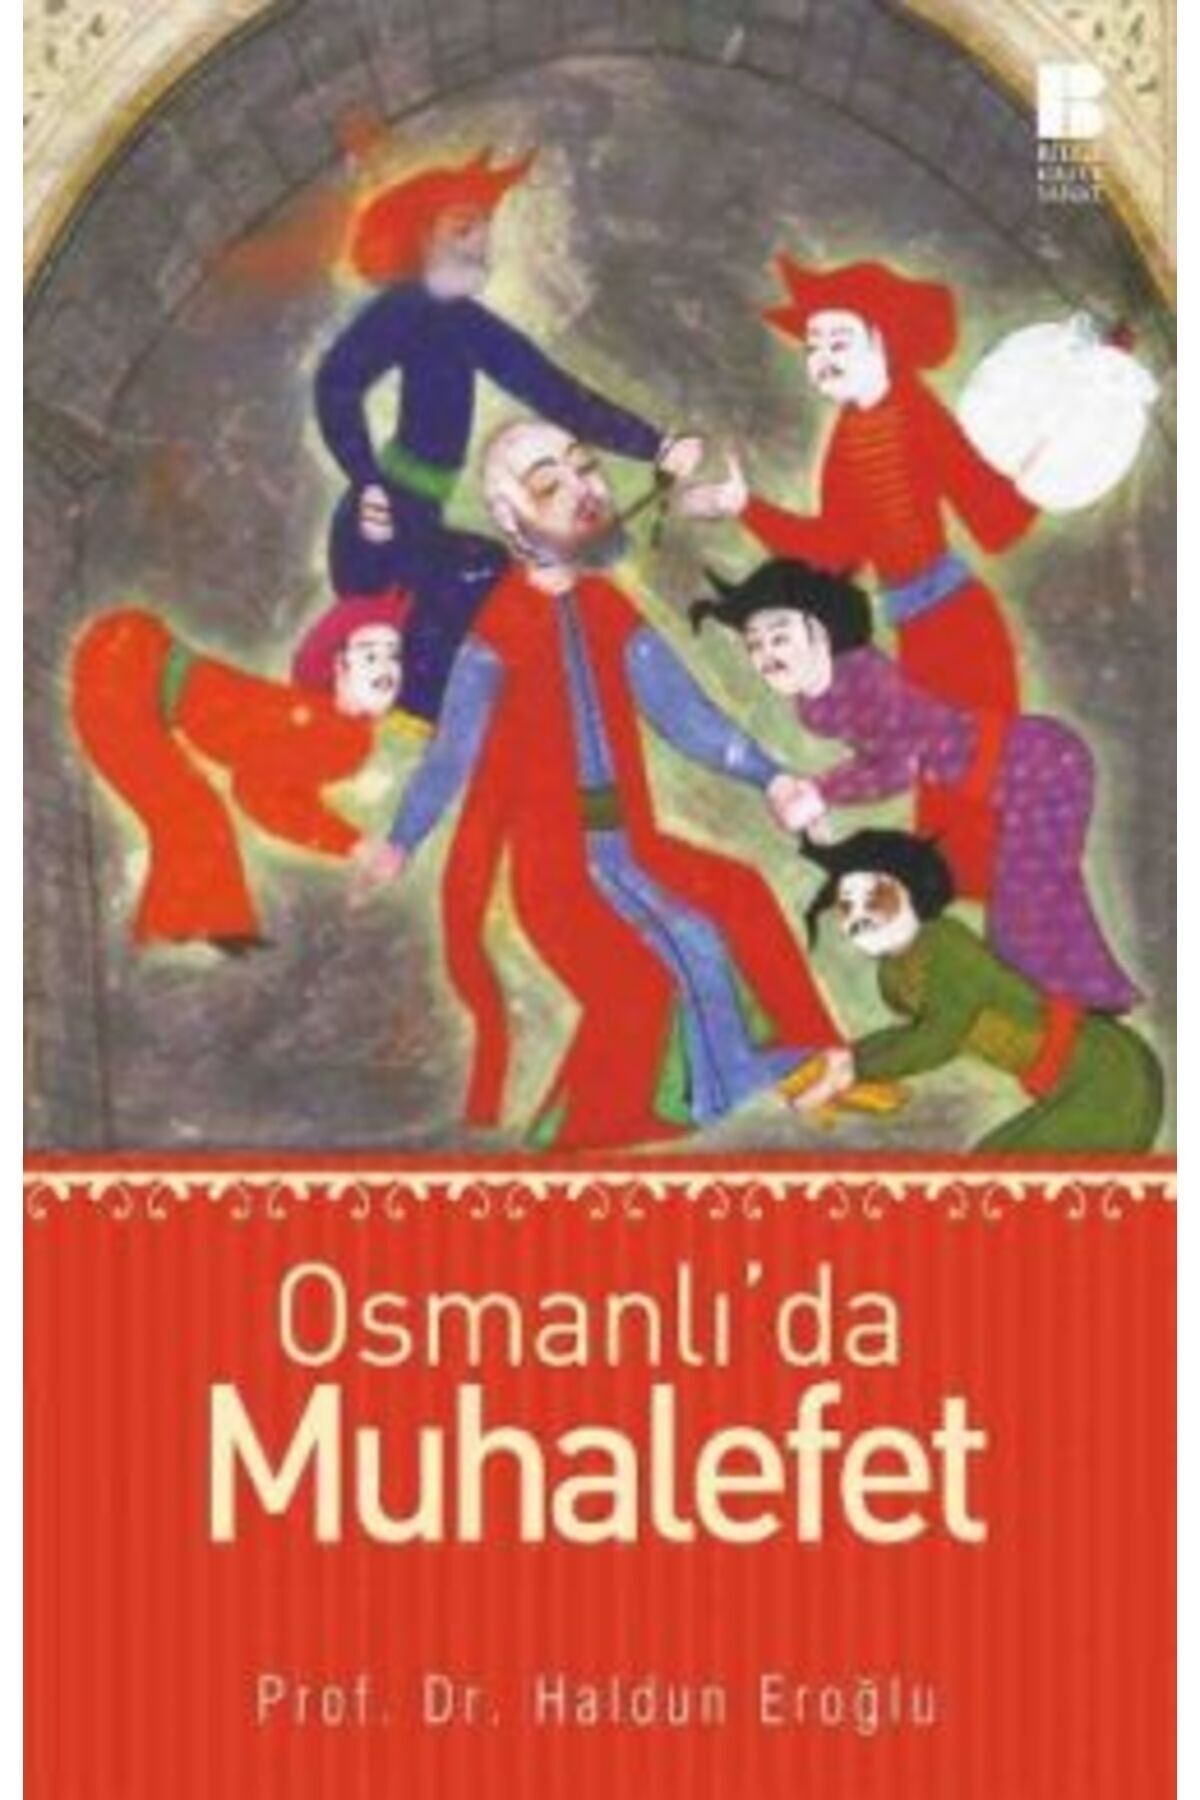 Bilge Kültür Sanat Osmanlı’da Muhalefet